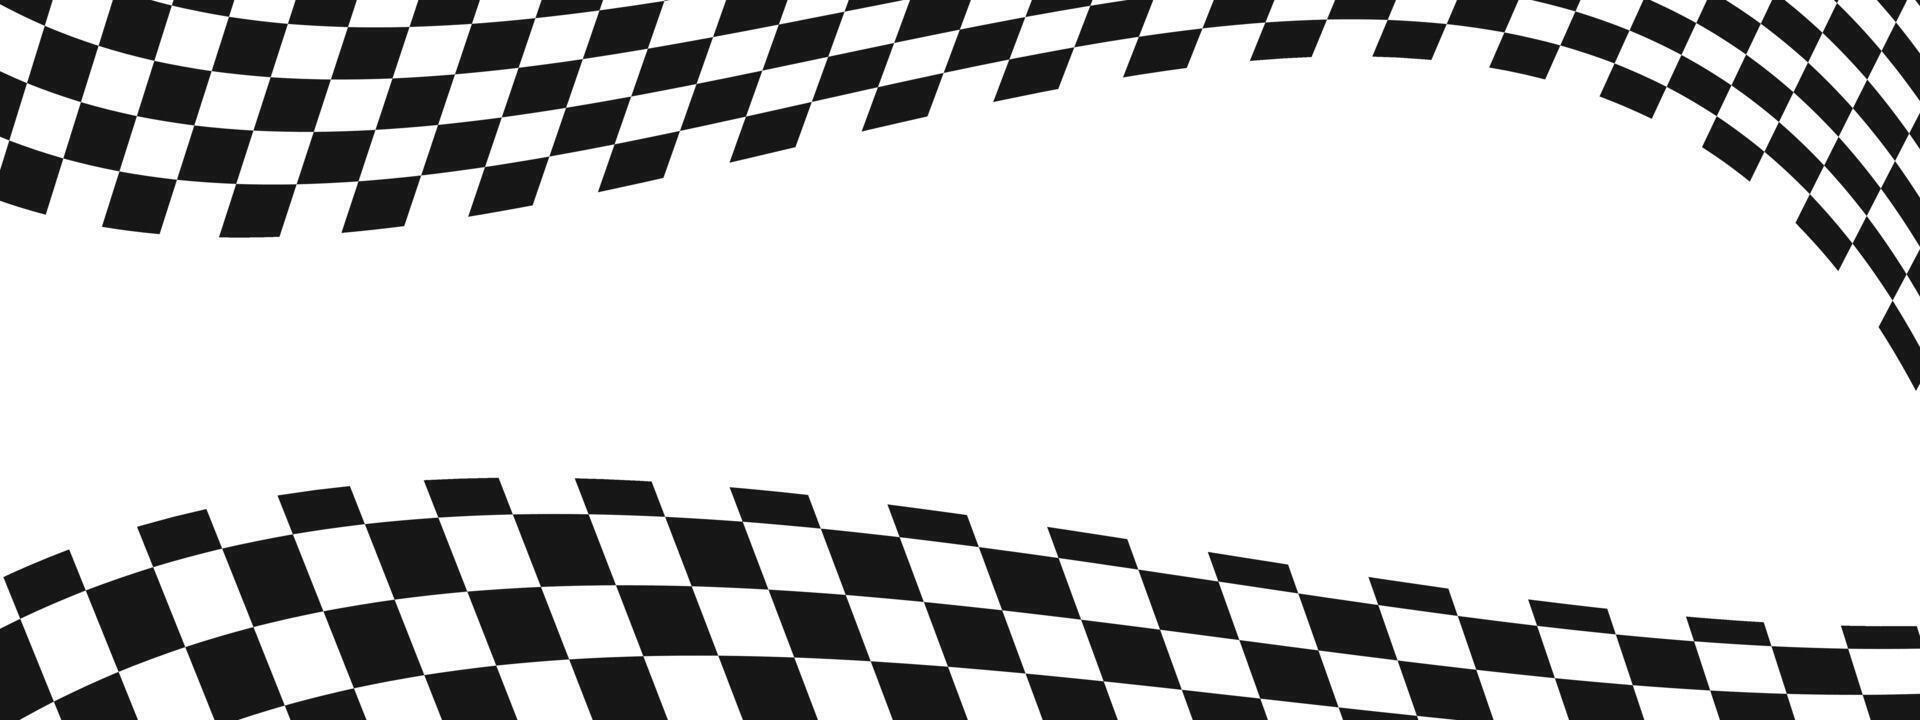 ondulación carrera banderas antecedentes con espacio de copia. motocross, reunión, deporte coche competencia fondo de pantalla. deformado negro y blanco cuadrícula modelo. a cuadros devanado textura. vector